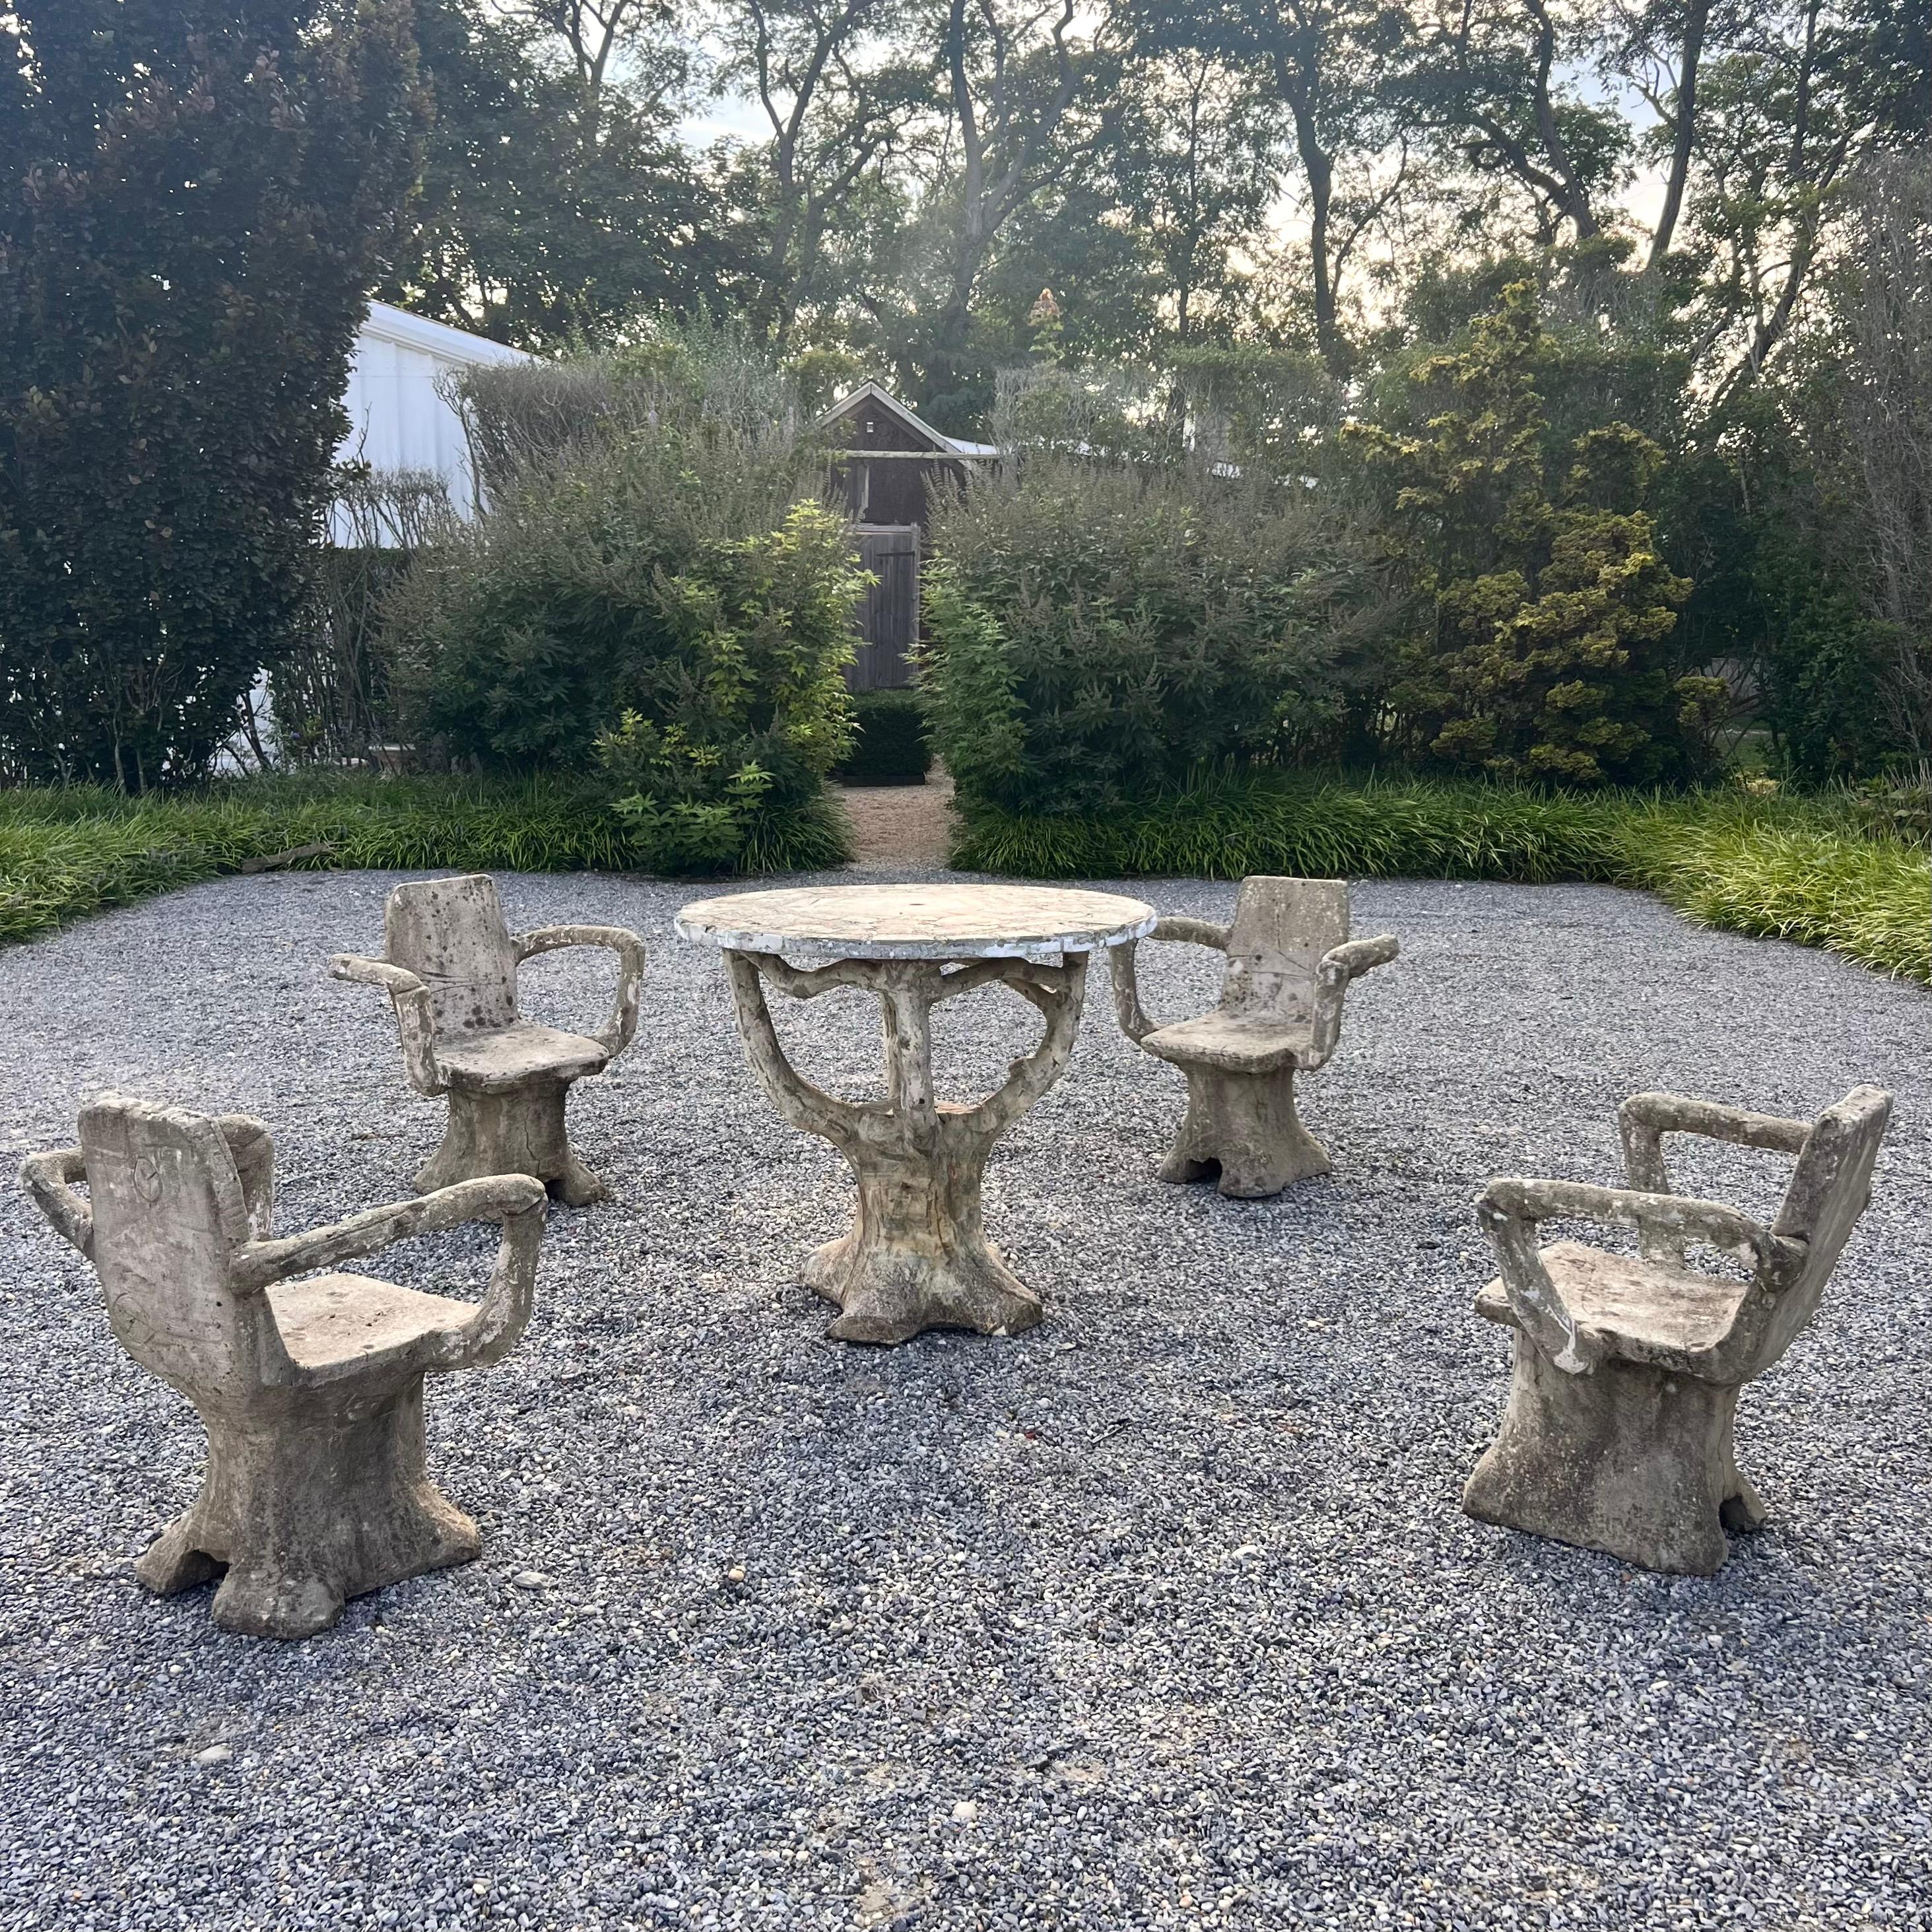 Importante table et tabourets en béton faux-bois de France, fabriqués dans les années 1950. Cet ensemble comprend 4 chaises et une table. Les accoudoirs de la chaise sont de style anthropomorphe. Les pieds et la base de la table ressemblent à des